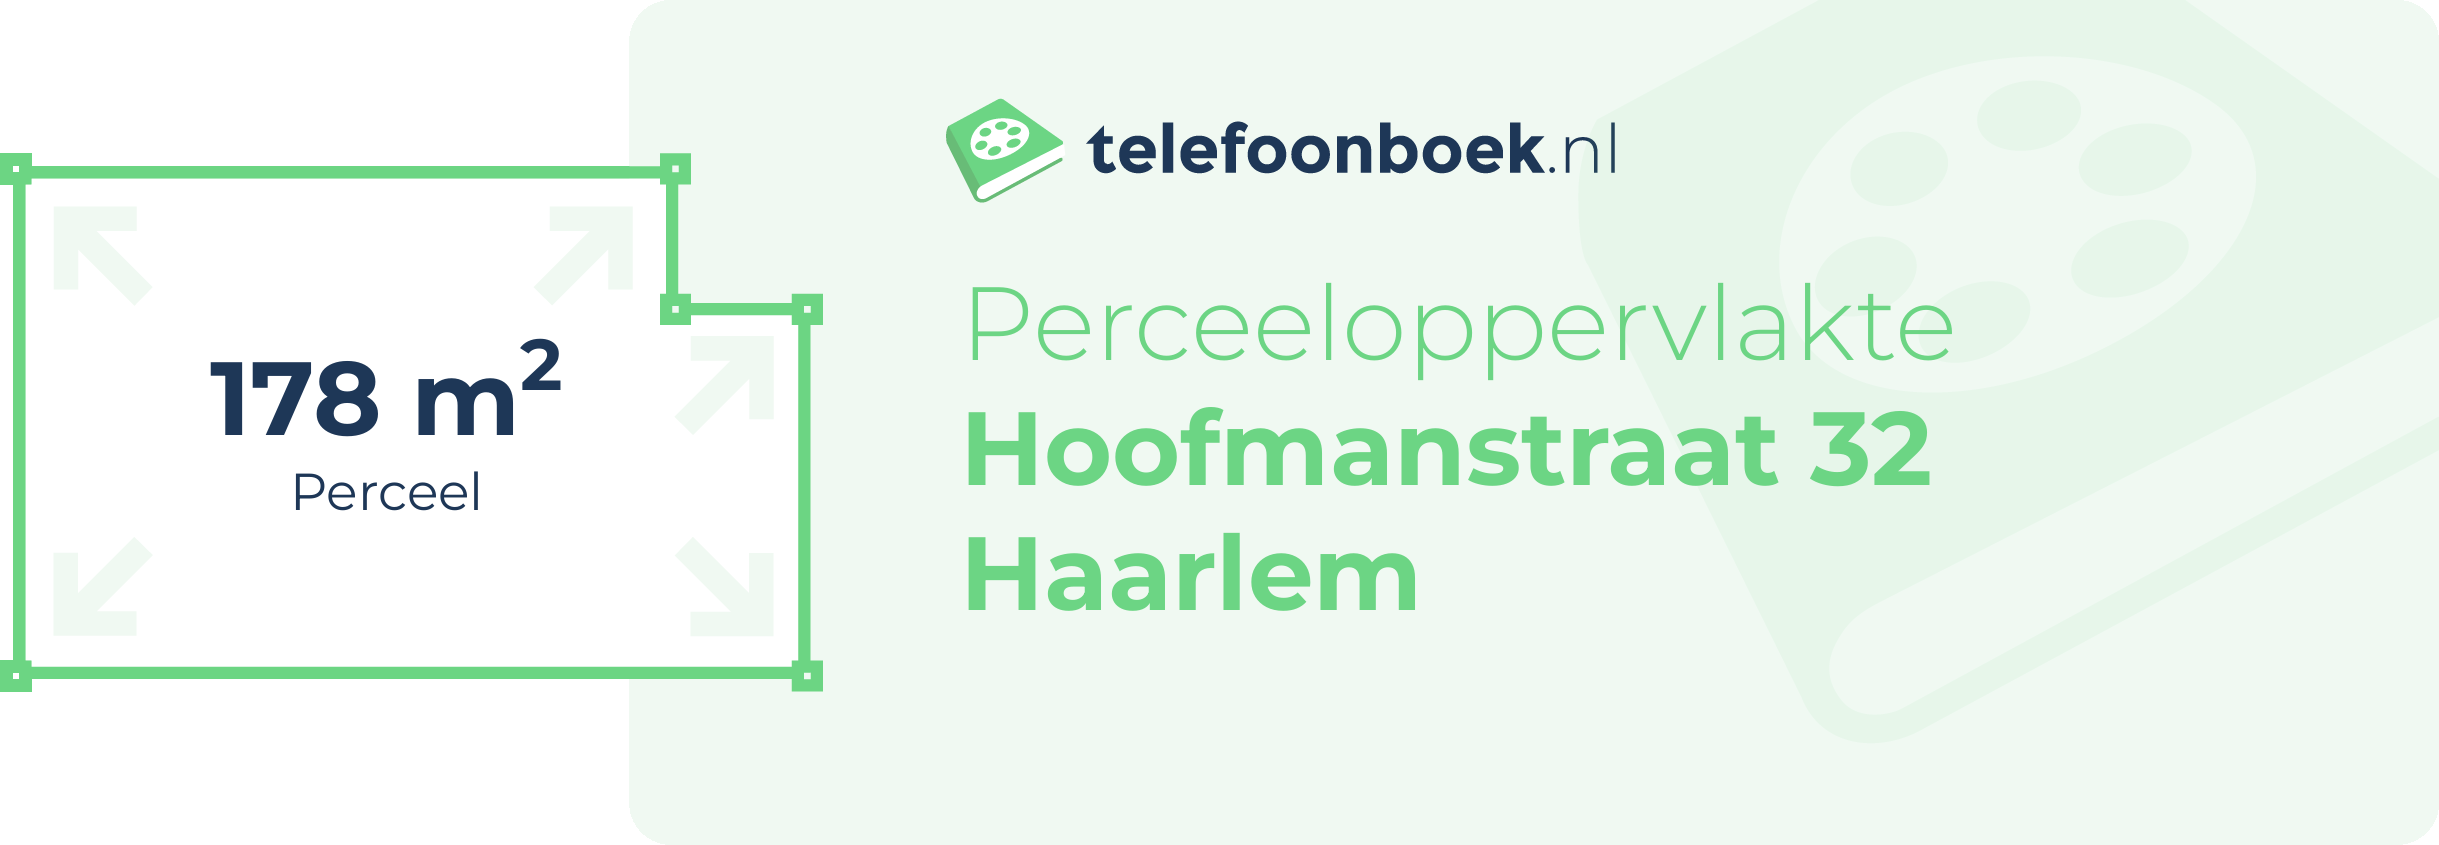 Perceeloppervlakte Hoofmanstraat 32 Haarlem